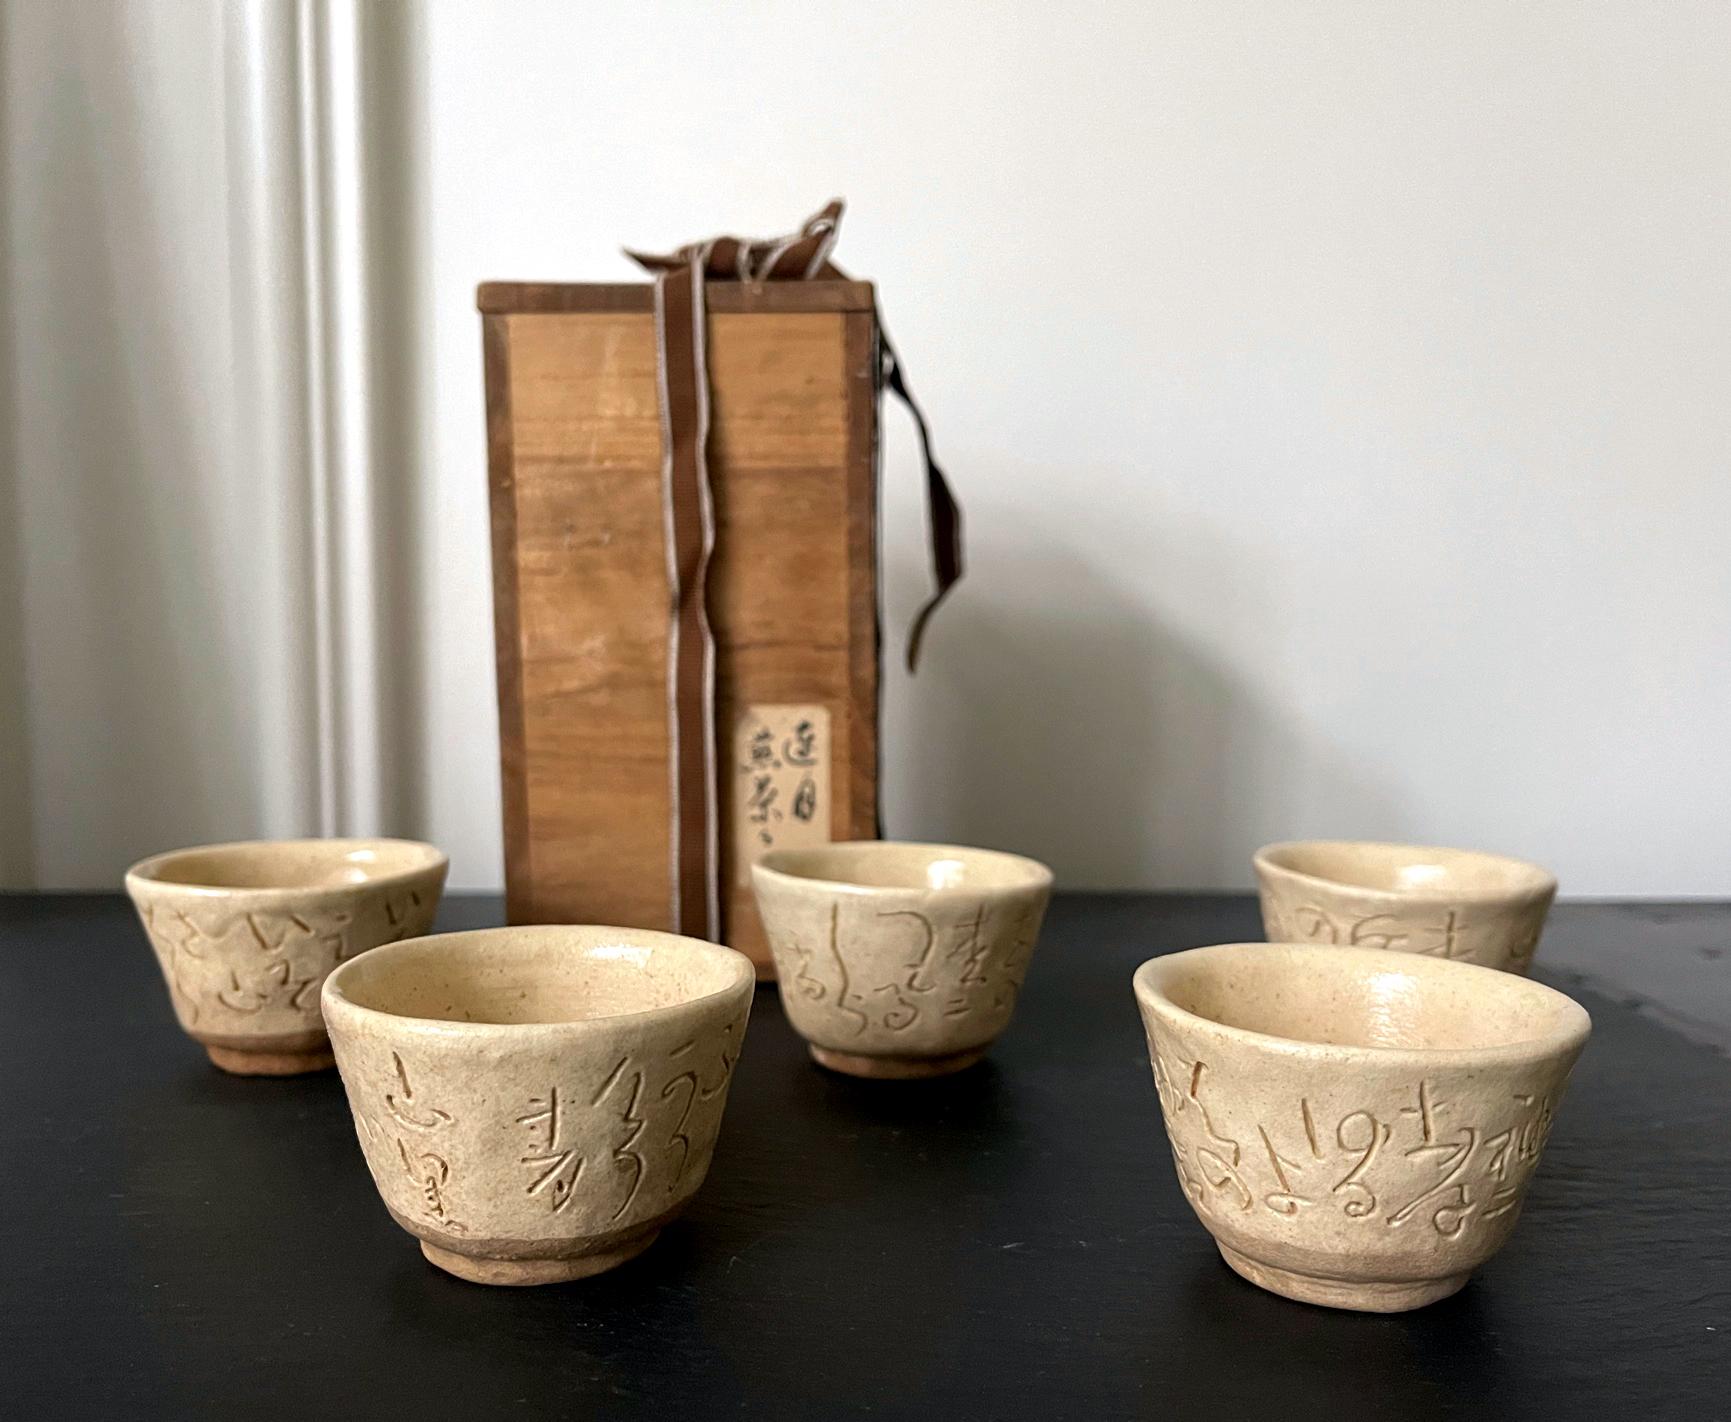 Ein Satz von fünf Sencha-Tassen aus Steinzeug von Otagaki Rengetsu (1791-1875). Diese Miniaturbecher wurden einfach in der klassischen Form gegossen, weiß glasiert und mit kursiven Waka-Gedichten versehen, einem charakteristischen Dekorationsstil